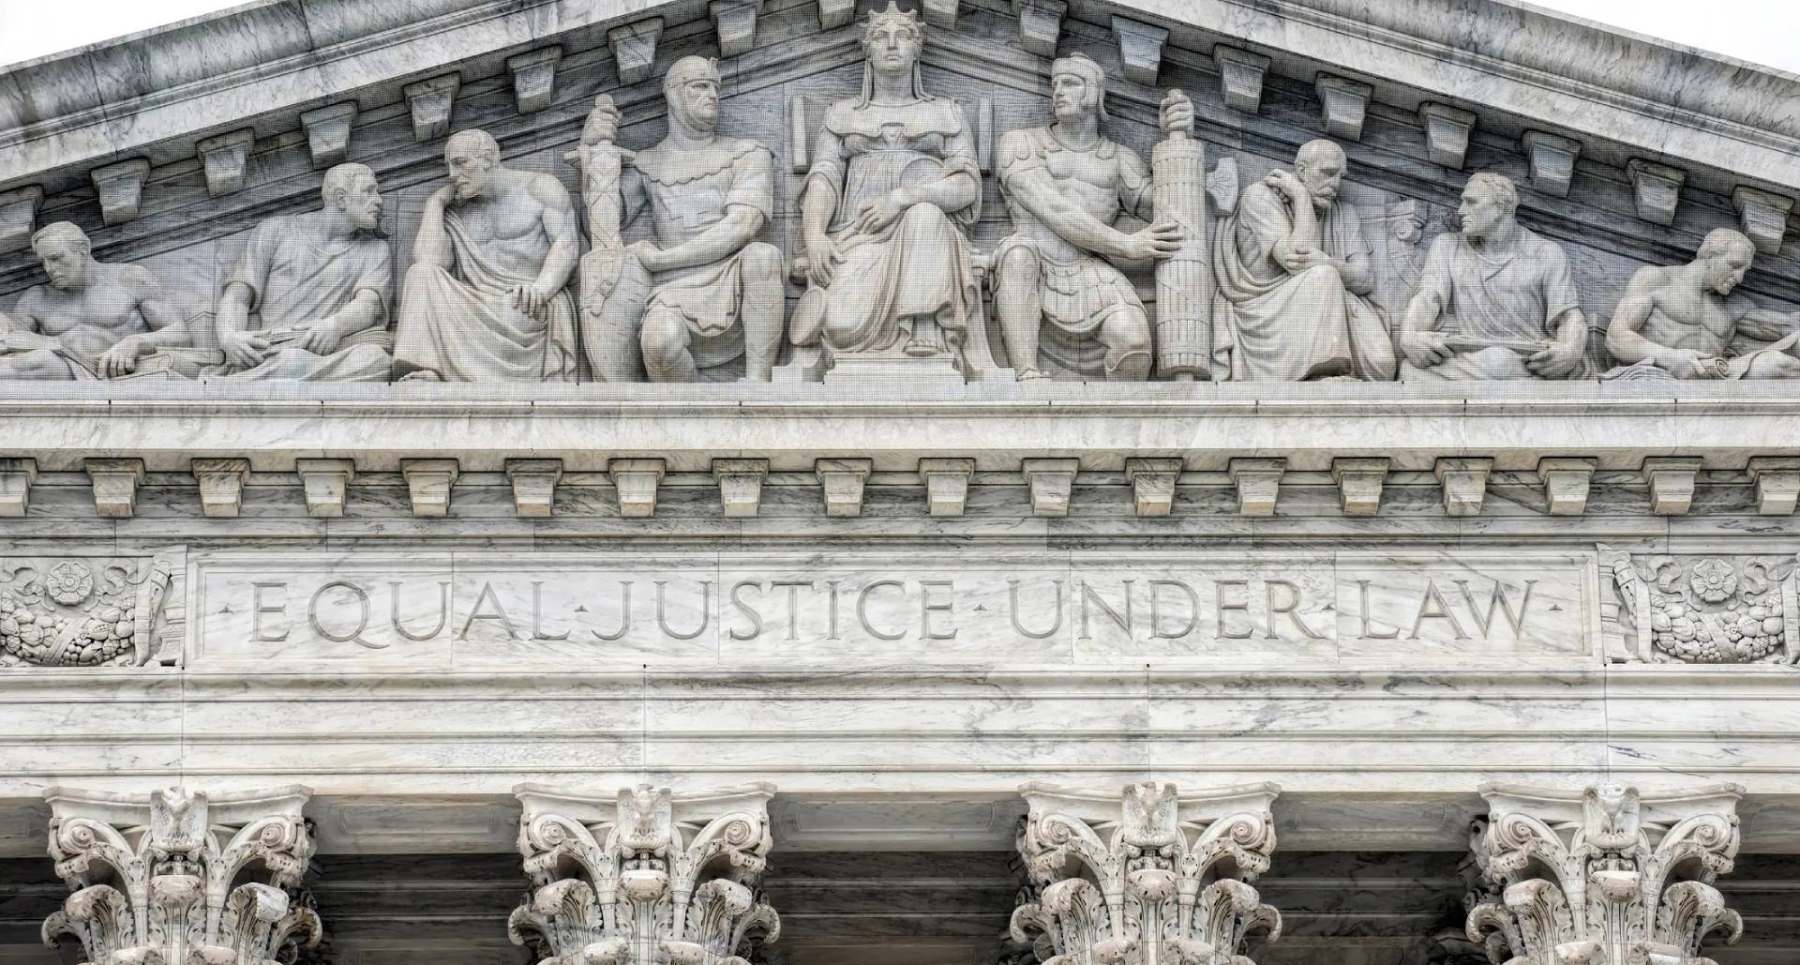 Equal-Justice-Under-Law